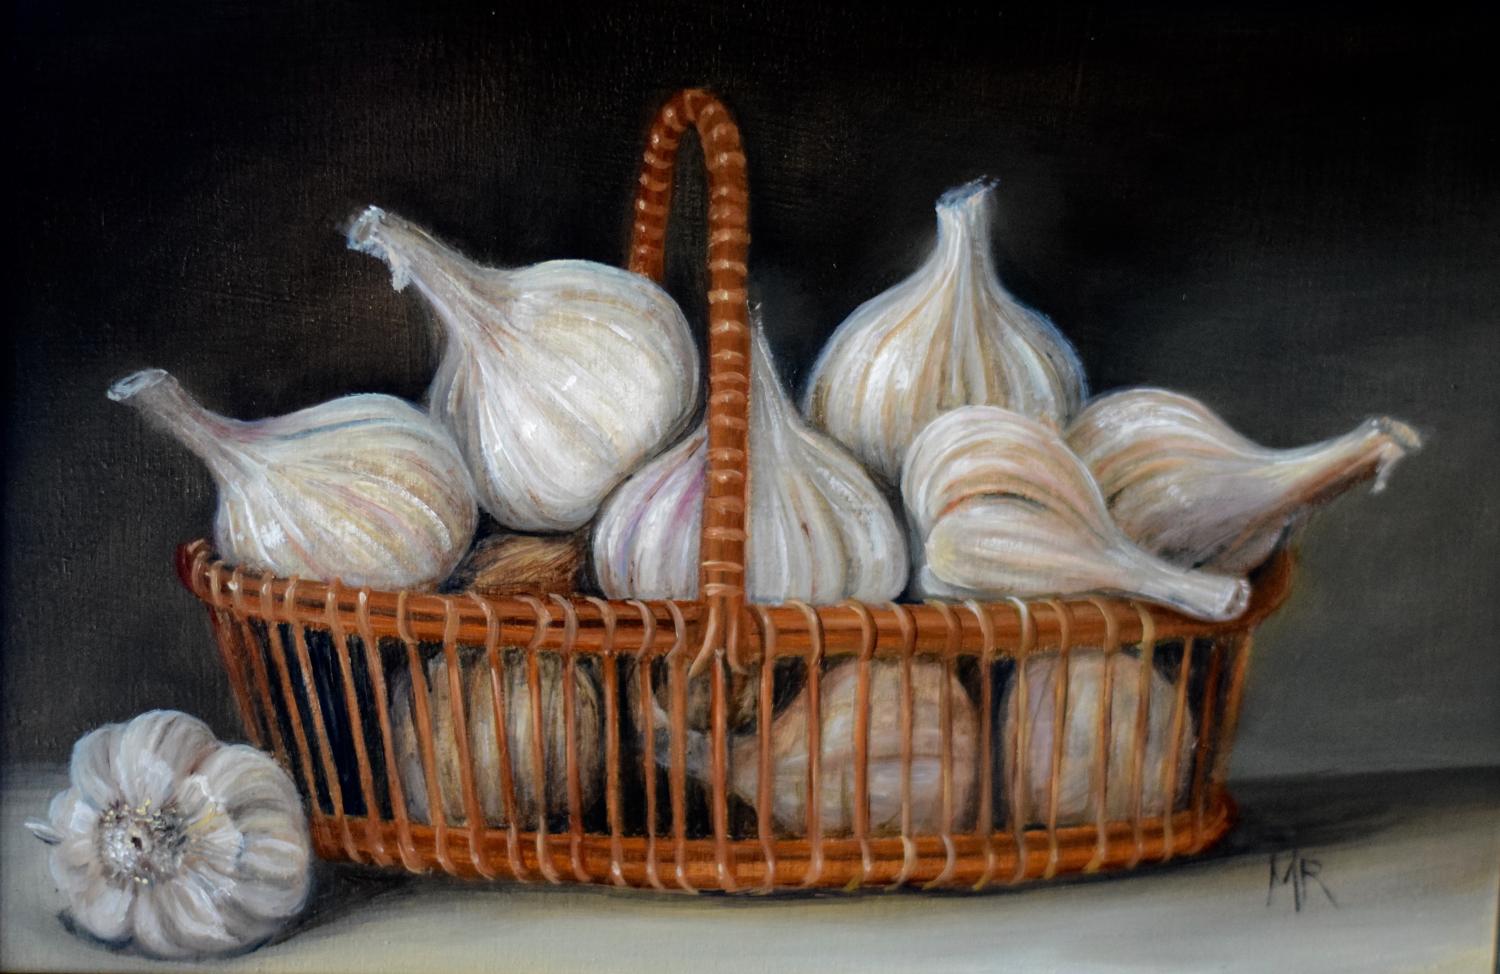 Basket of garlic